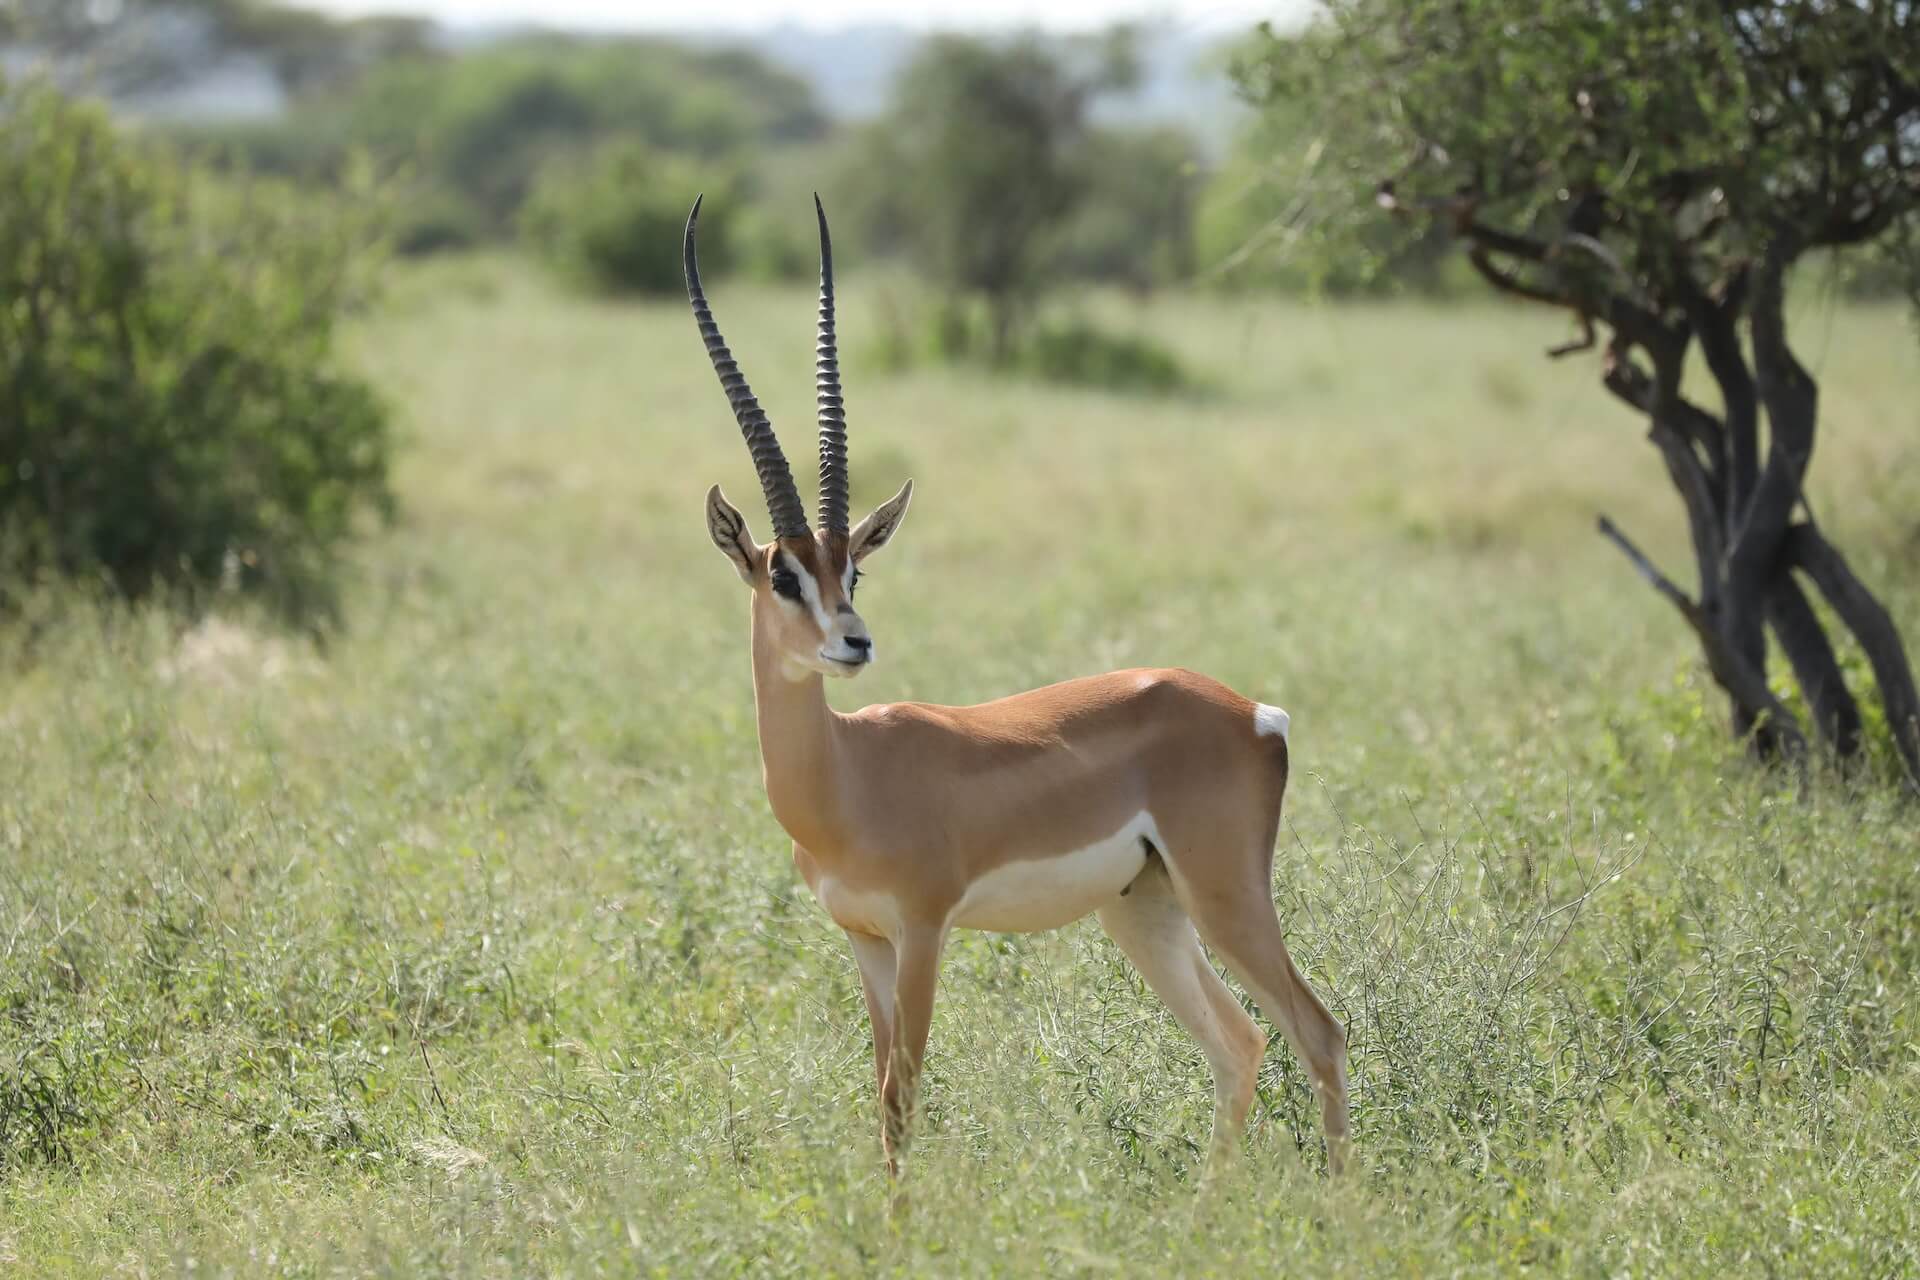 An antelope grazing in the Kenyan savannah